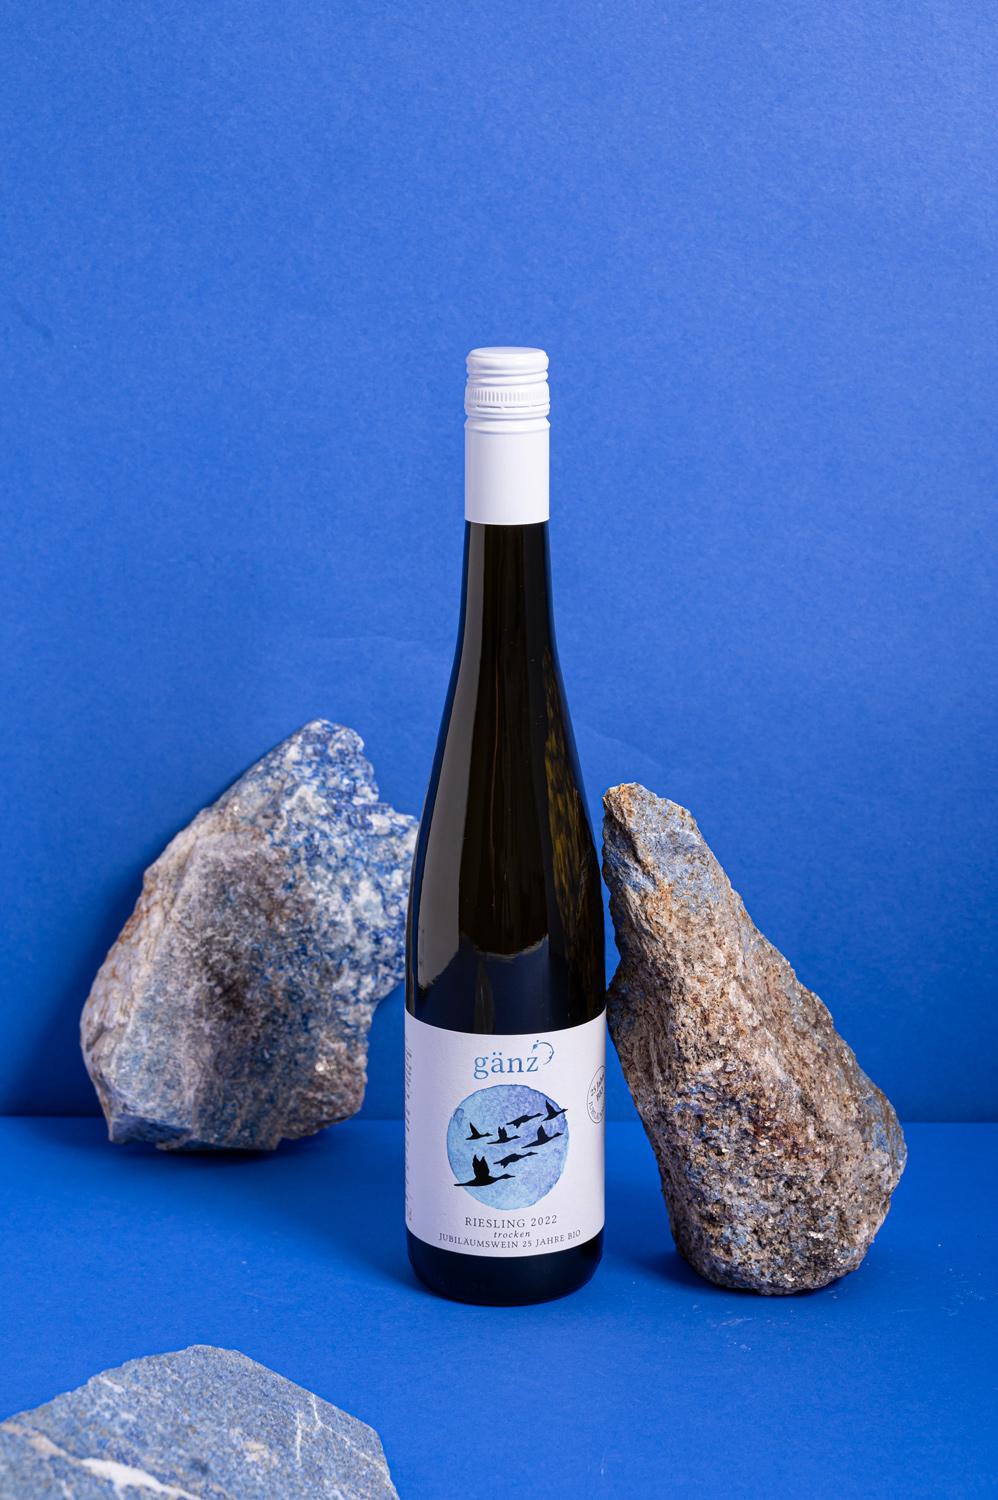 Weinflasche neben einem blauen Stein. Hintergrund ist tiefblau.